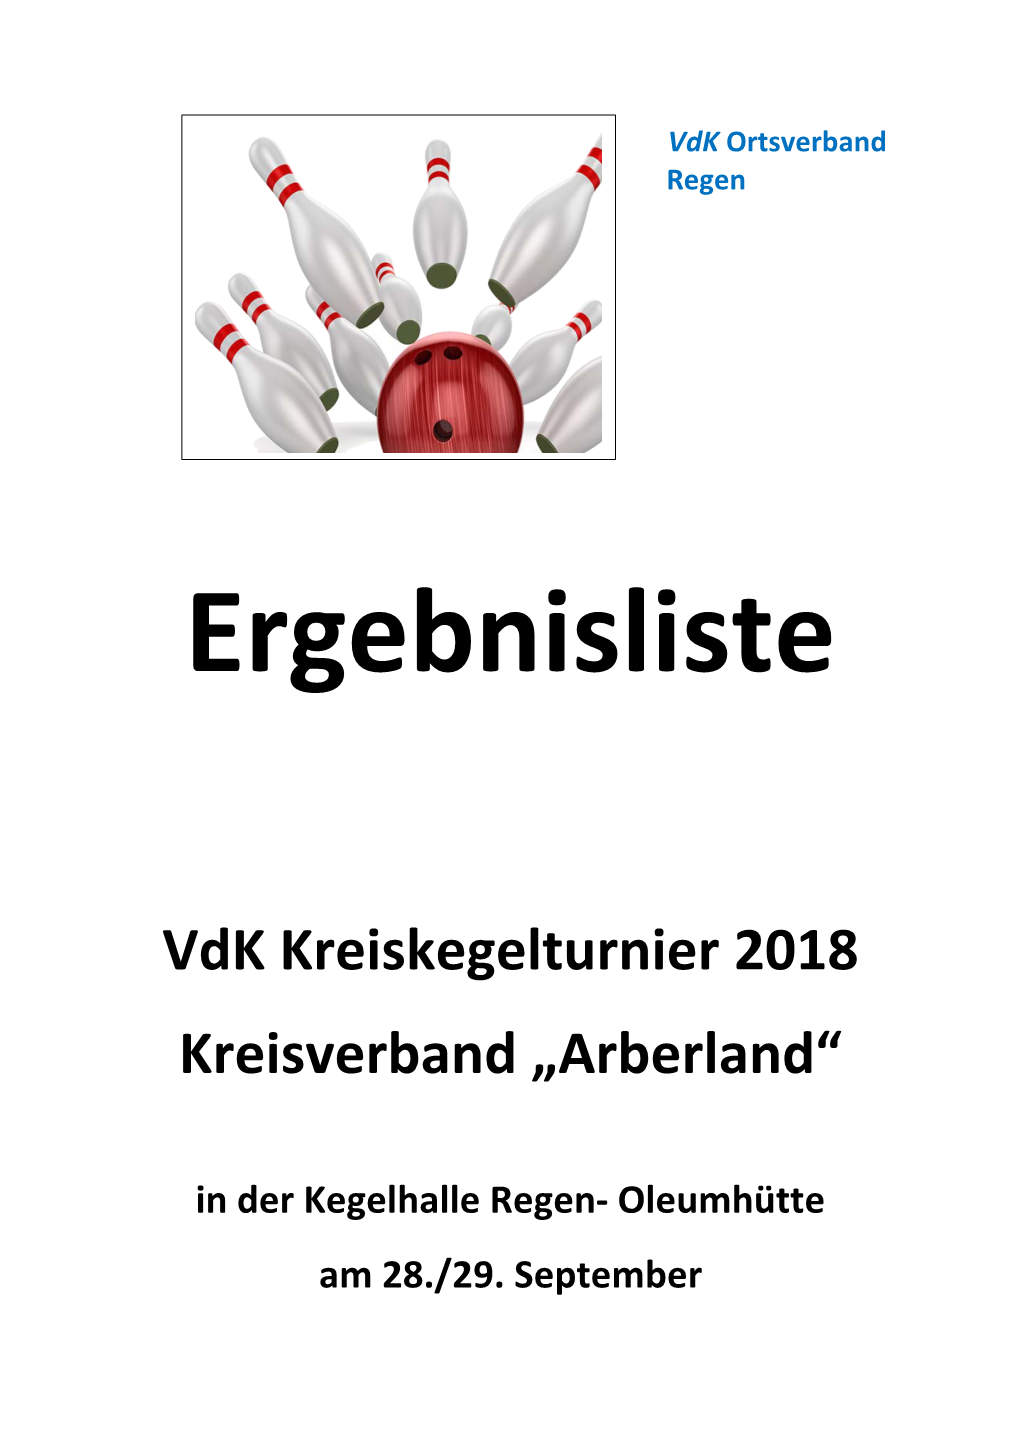 Vdk Kreiskegelturnier 2018 Kreisverband „Arberland“